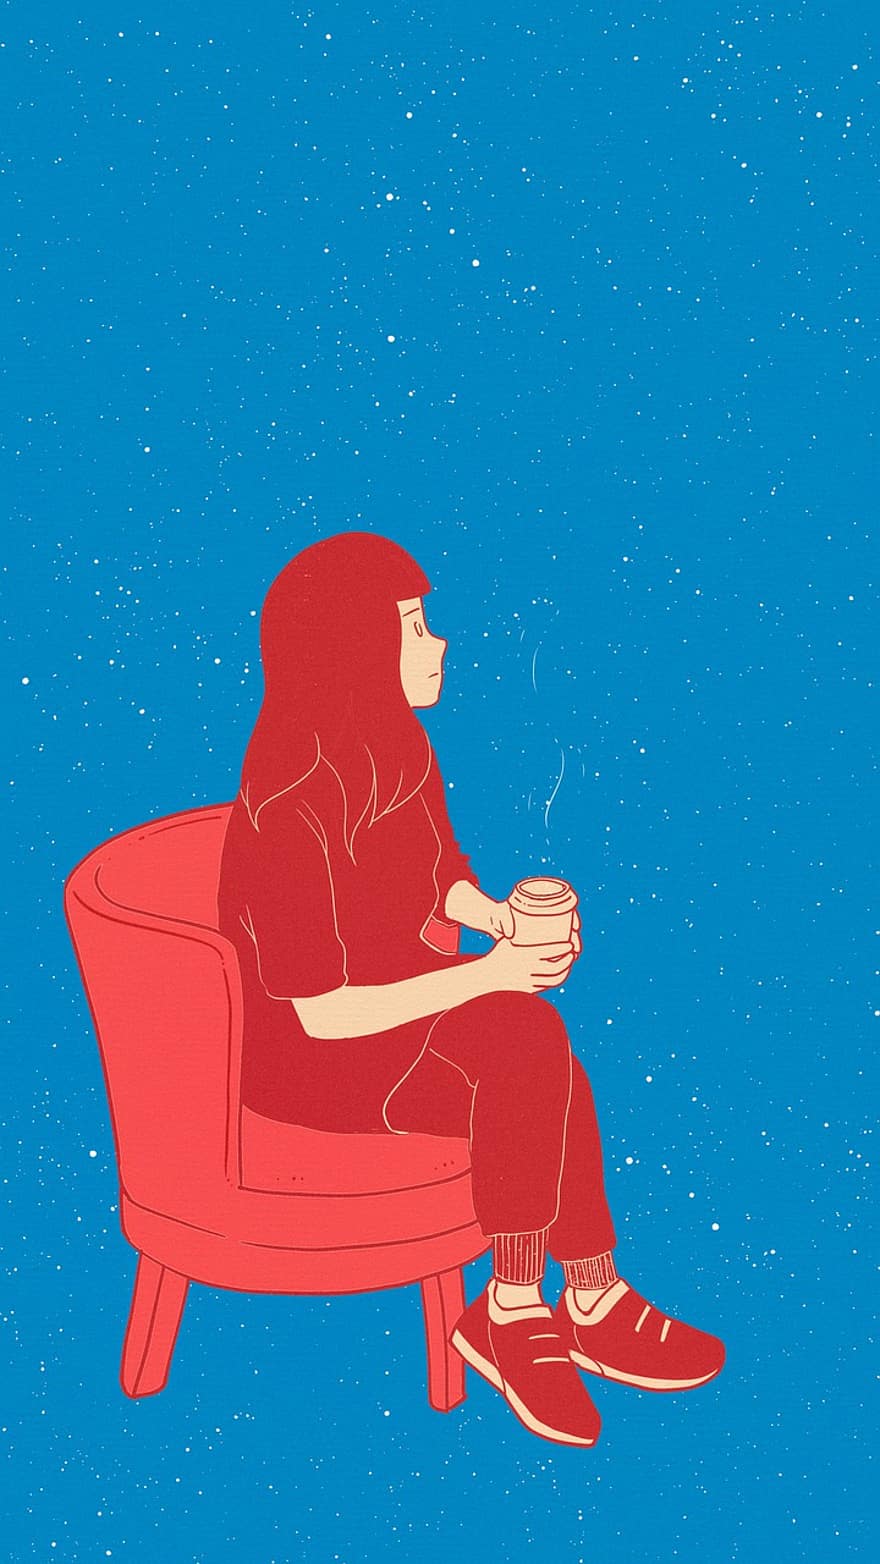 нарисованный от руки, звездное небо, ночь, остальное, девушка, кофе, чай, Синий кофе